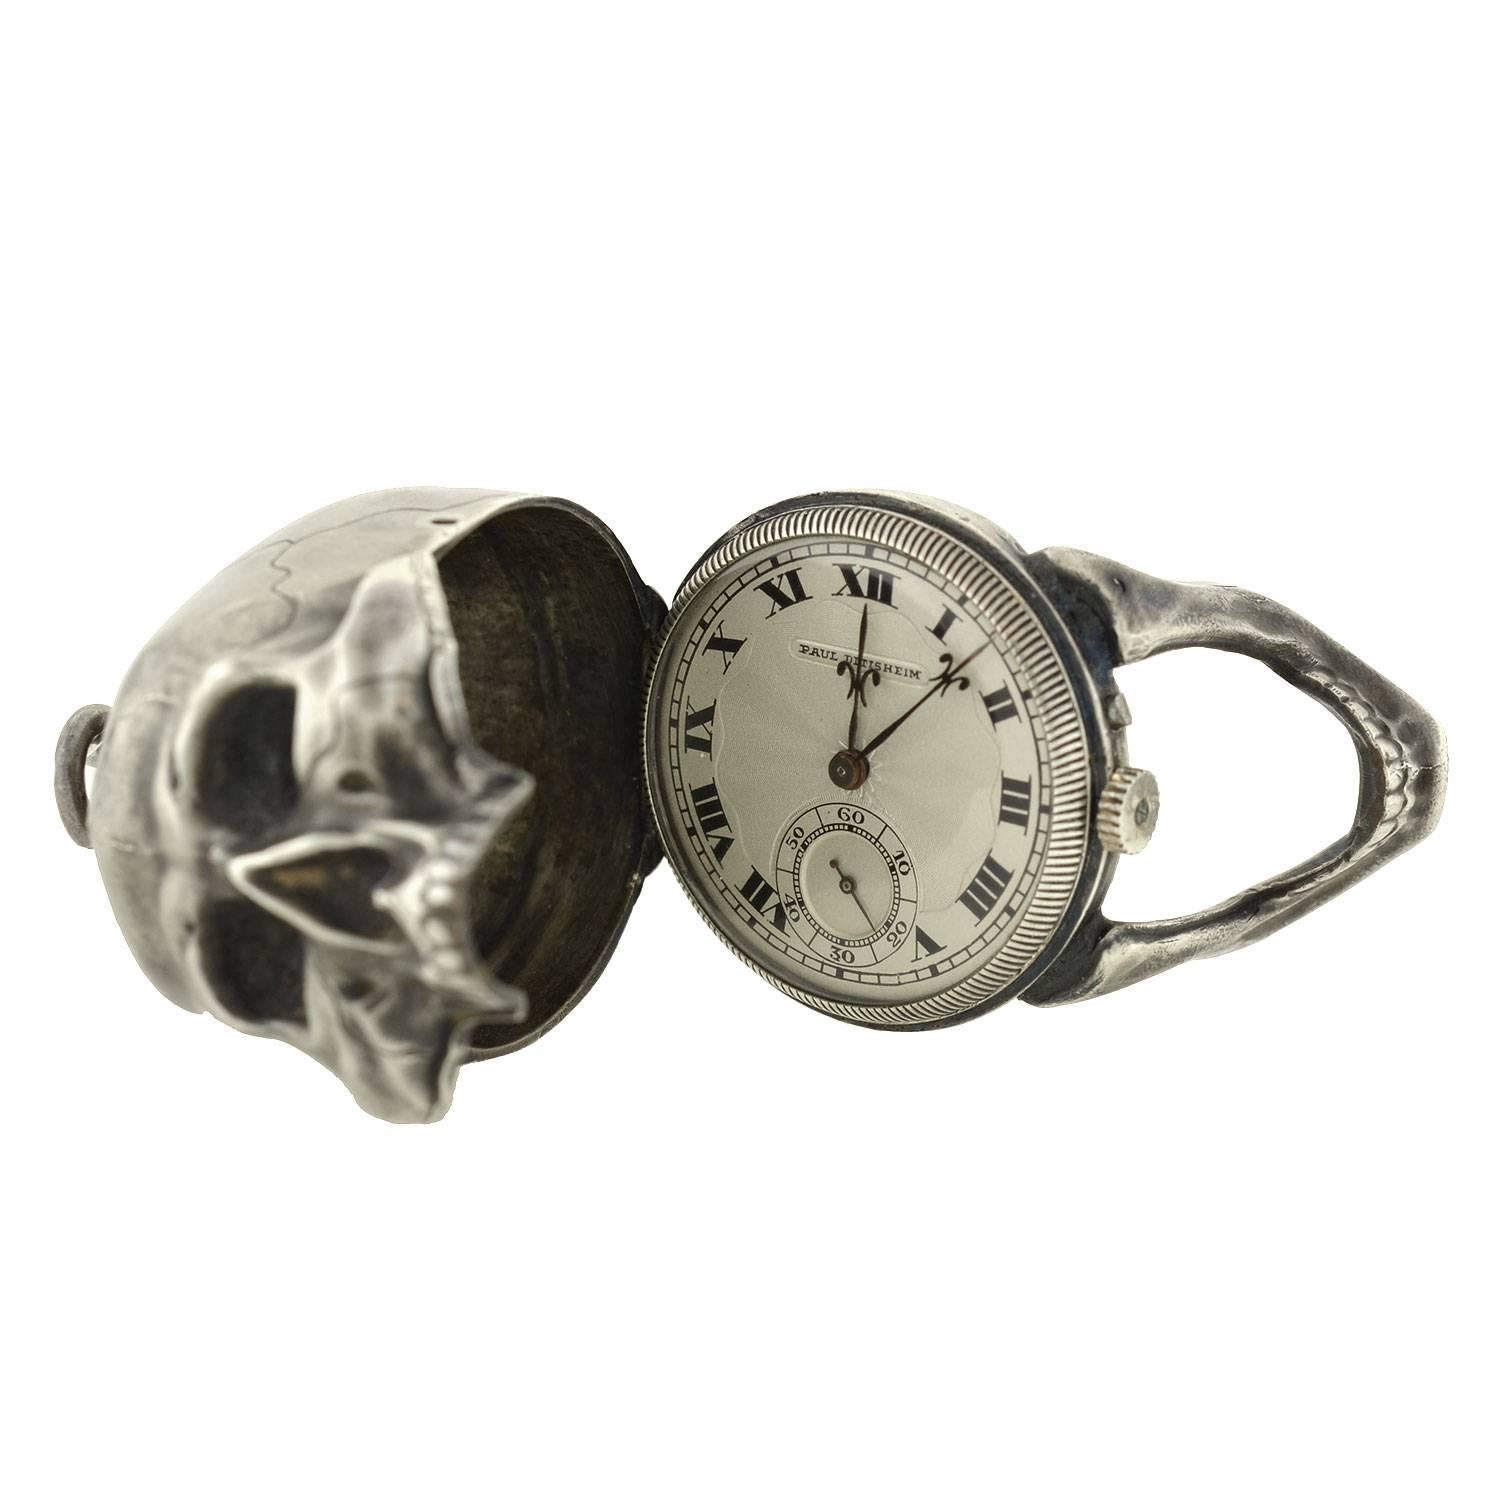 Paul Ditisheim war ein berühmter Schweizer Uhrmacher, Erfinder und Industrieller. Er wurde 1868 in La Chaux-de-Fonds, der historischen Wiege der Uhrenindustrie, geboren und entstammte der Familie Ditisheim, den Besitzern von Vulcain, einer bekannten